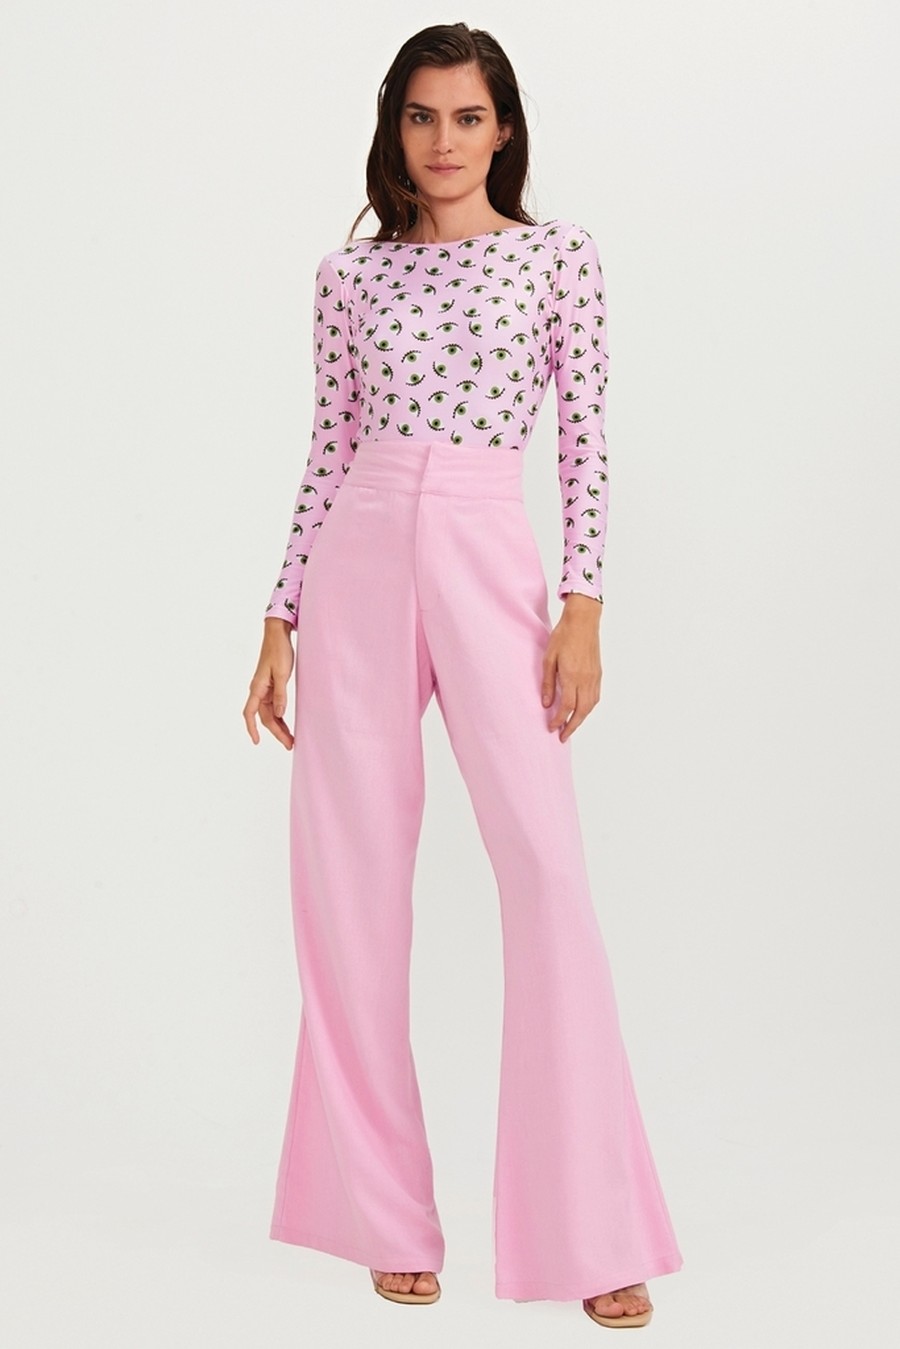 calça pantalona aime rosa CL11 triya